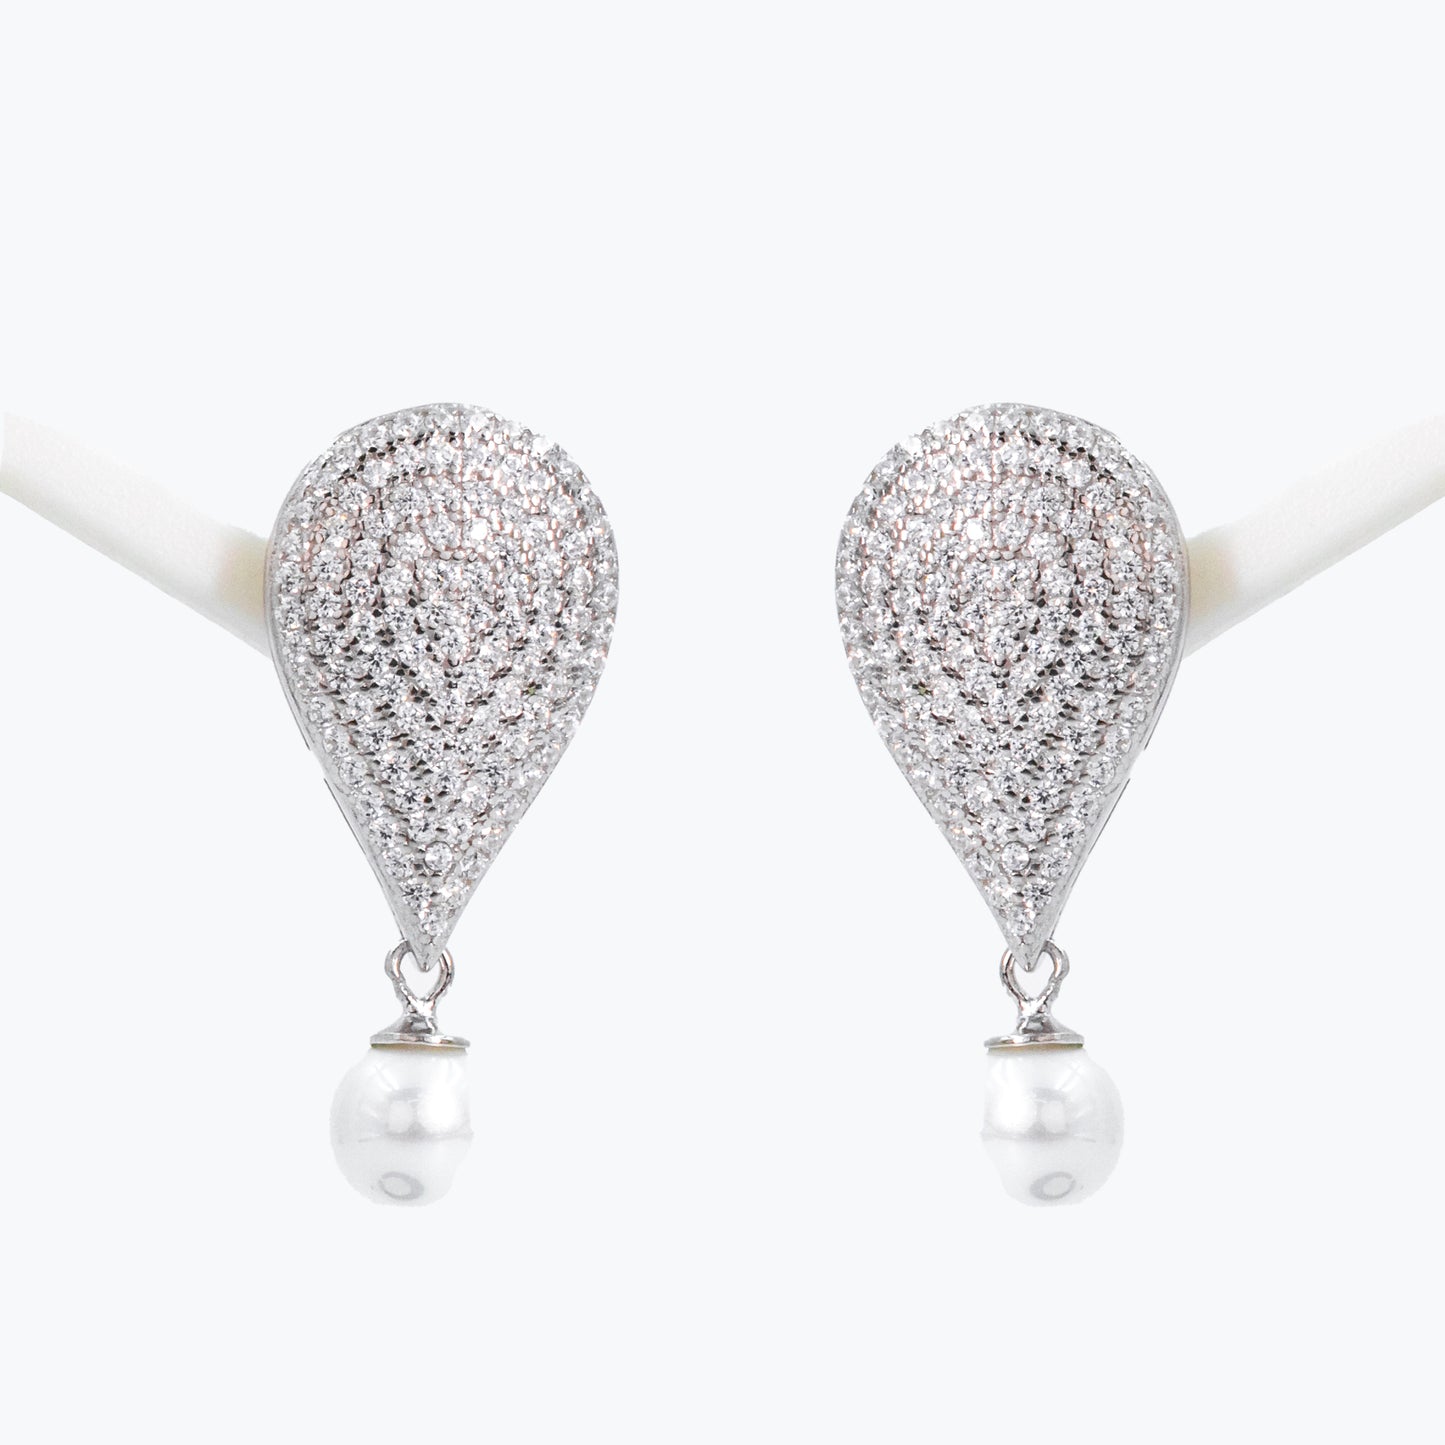 Silver Luxe Pearl Drop Earrings